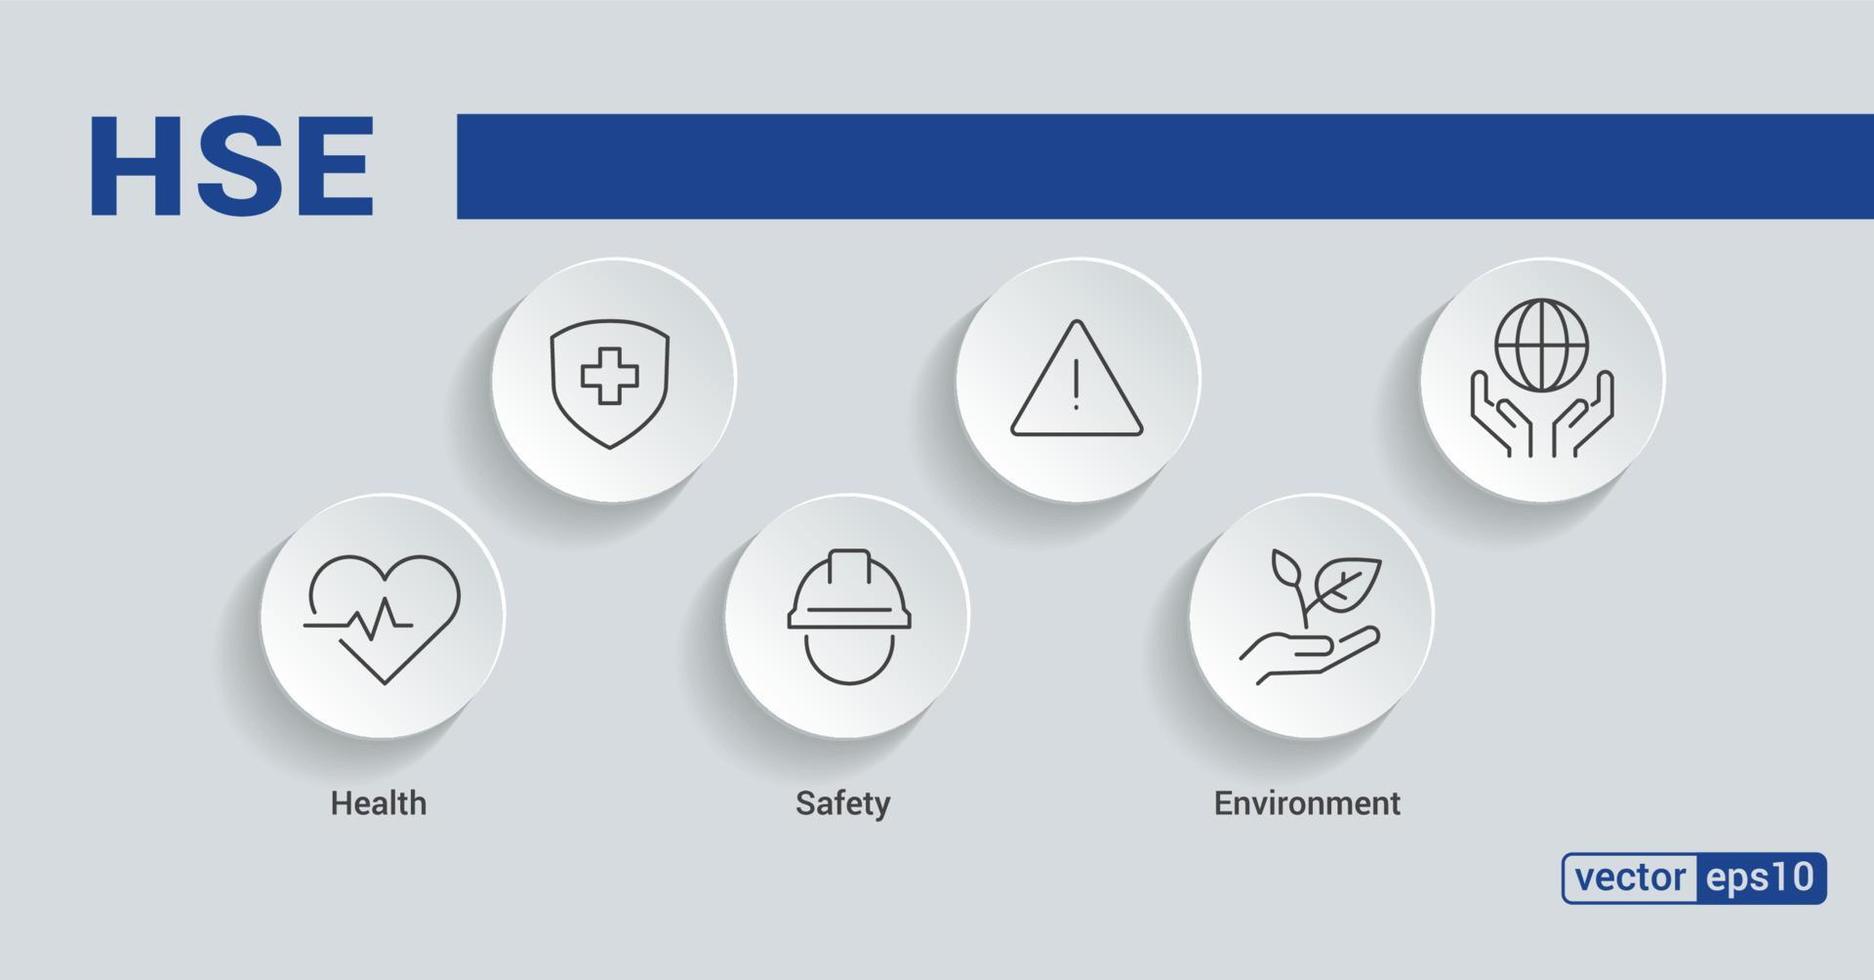 hse. acronyme santé sécurité environnement. bannière de concept d'illustration vectorielle avec des icônes et des mots-clés. vecteur eps 10.